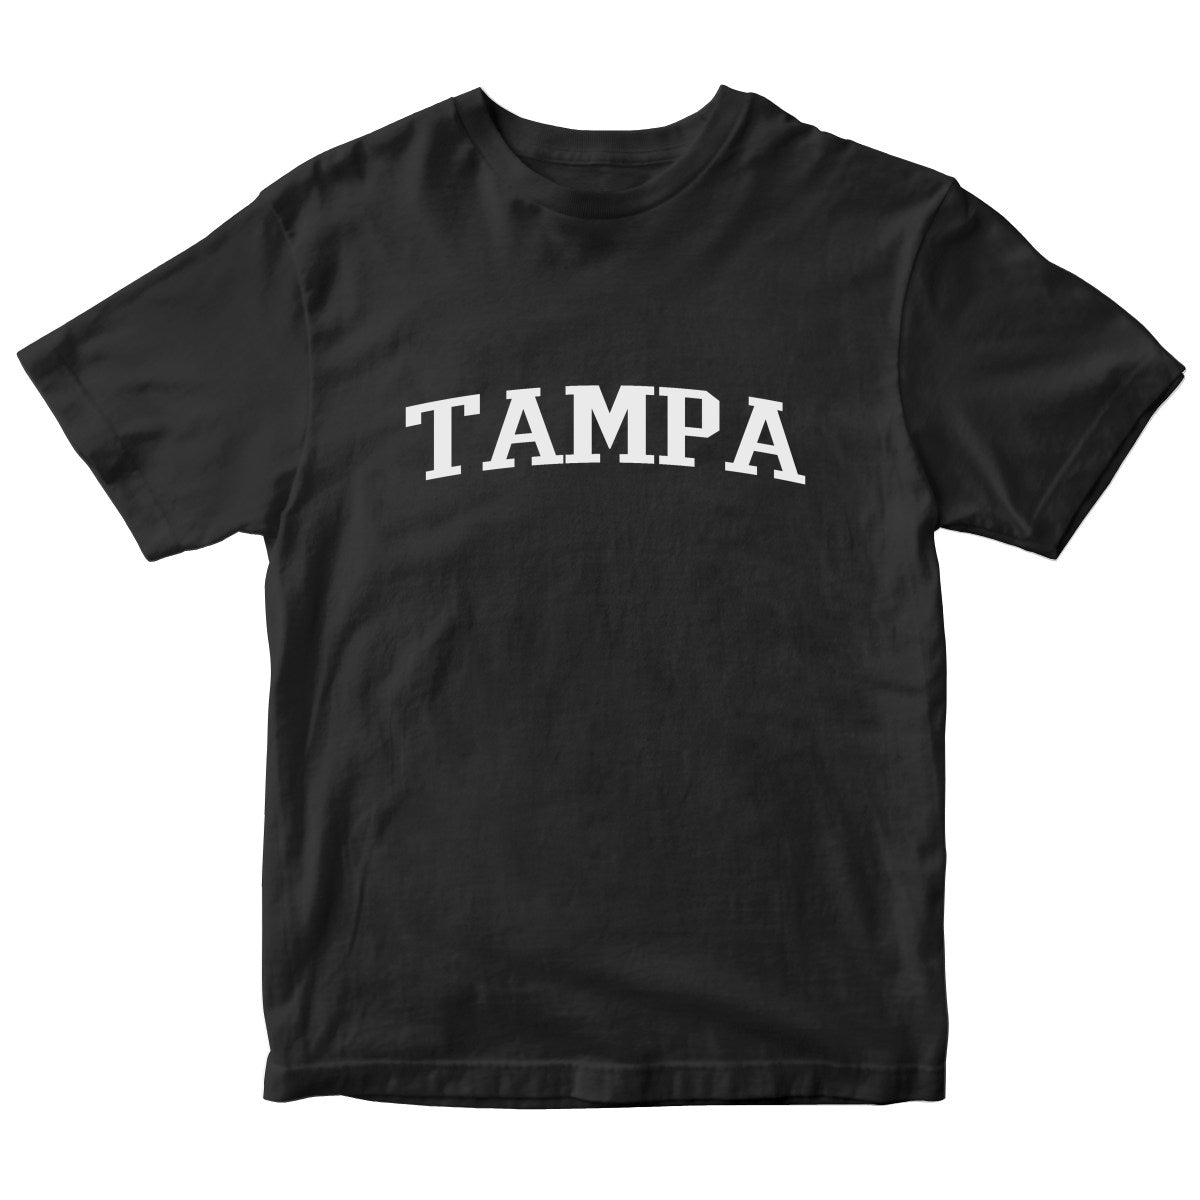 Tampa Kids T-shirt